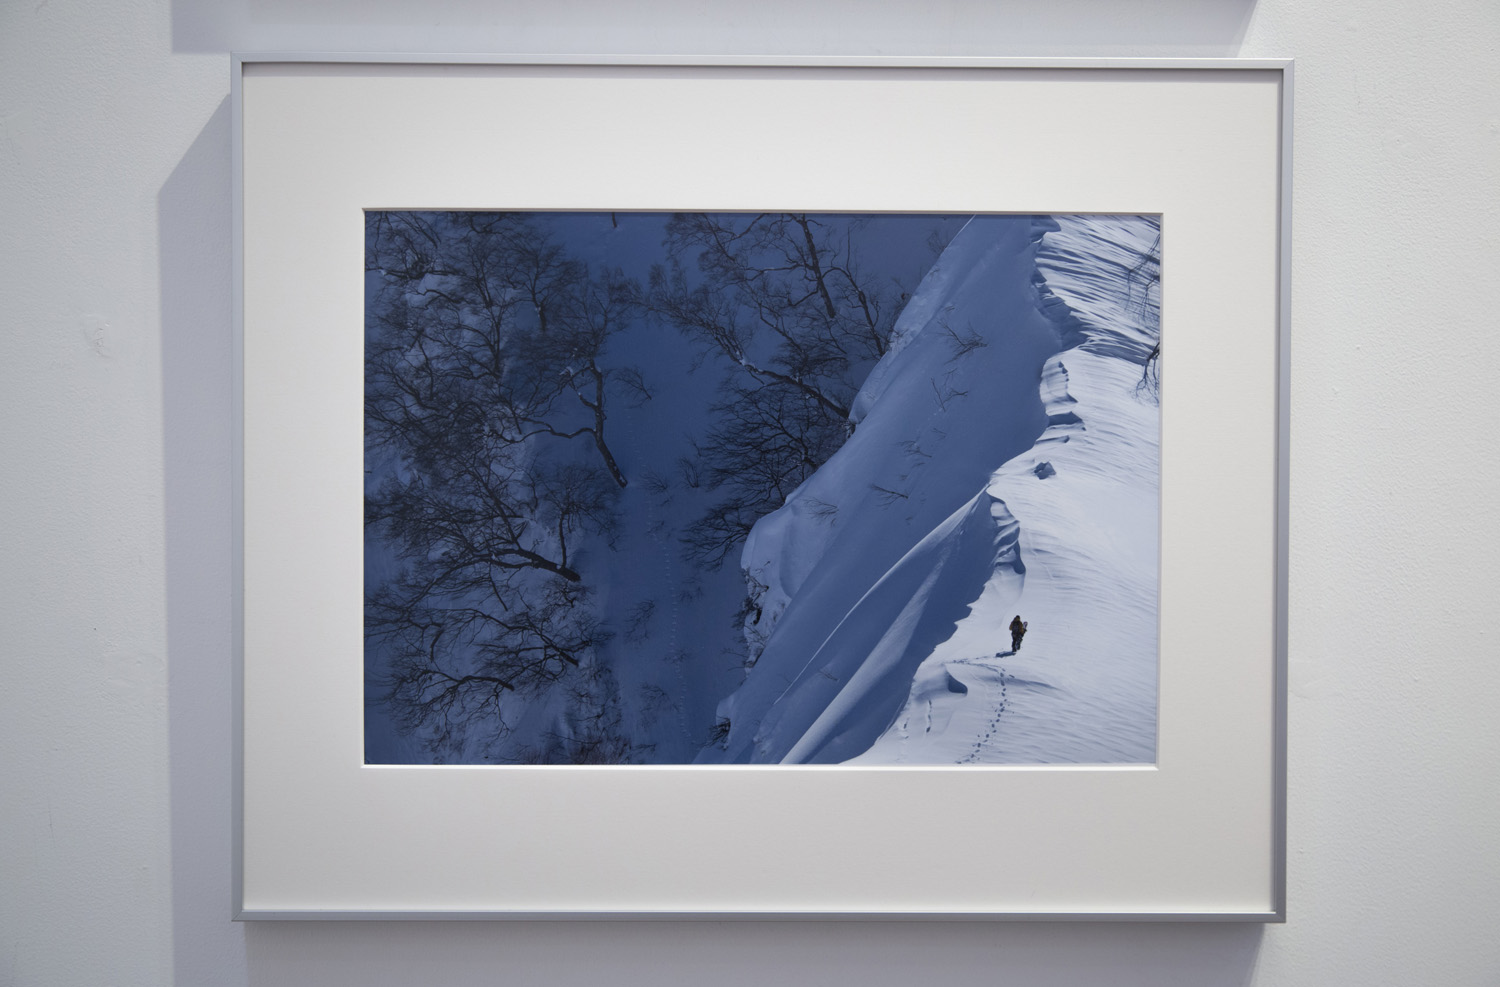 遠藤 励氏の写真にはどれもリアルなスノーボーダーの生き様が映し出されている